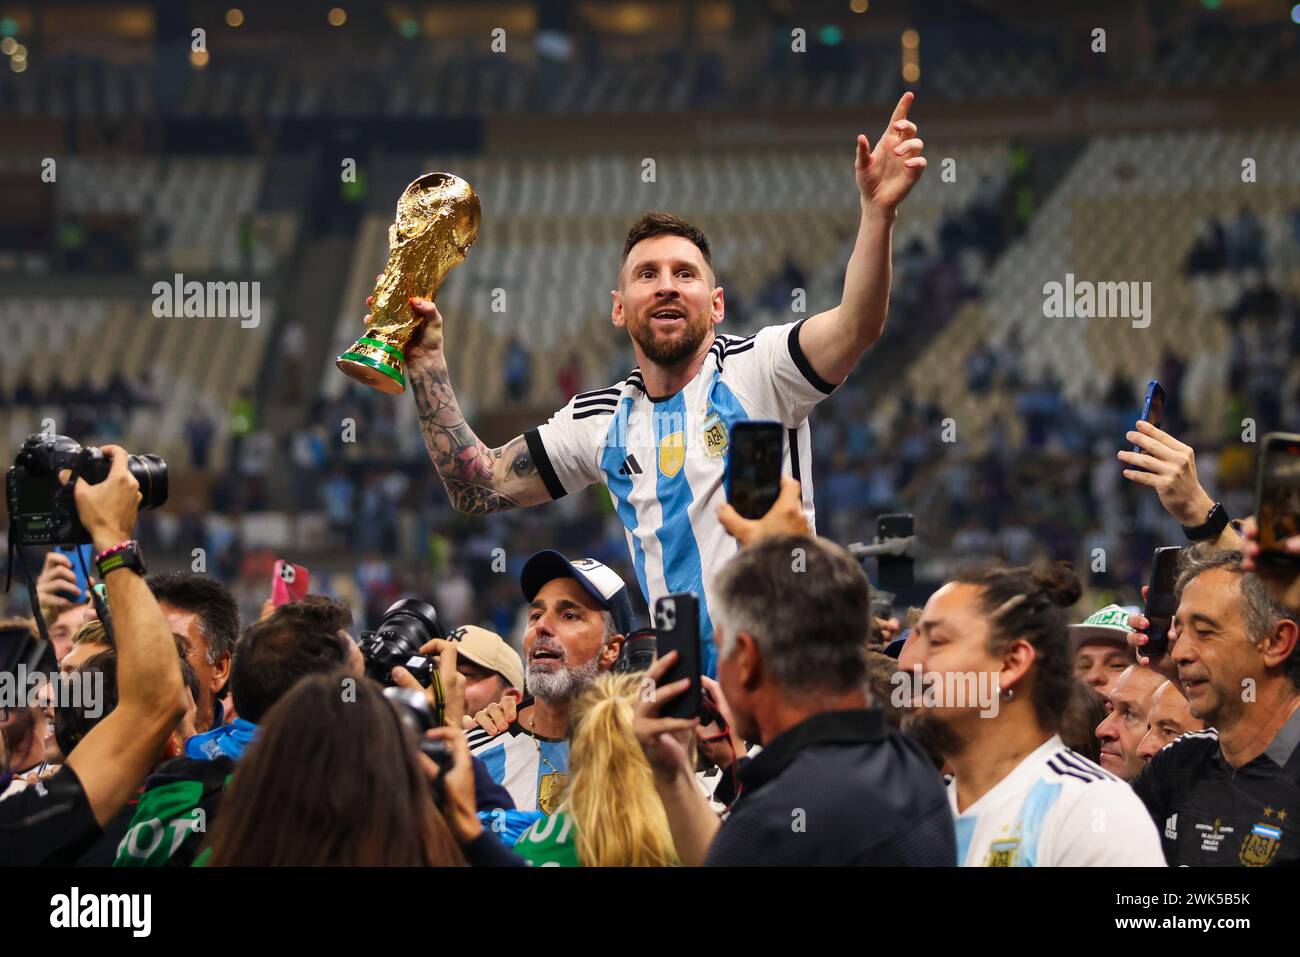 CITTÀ DI LUSAIL, QATAR - 18 DICEMBRE: Lionel messi festeggia con il World Cup Trophy dopo la finale della Coppa del mondo FIFA Qatar 2022. Foto Stock